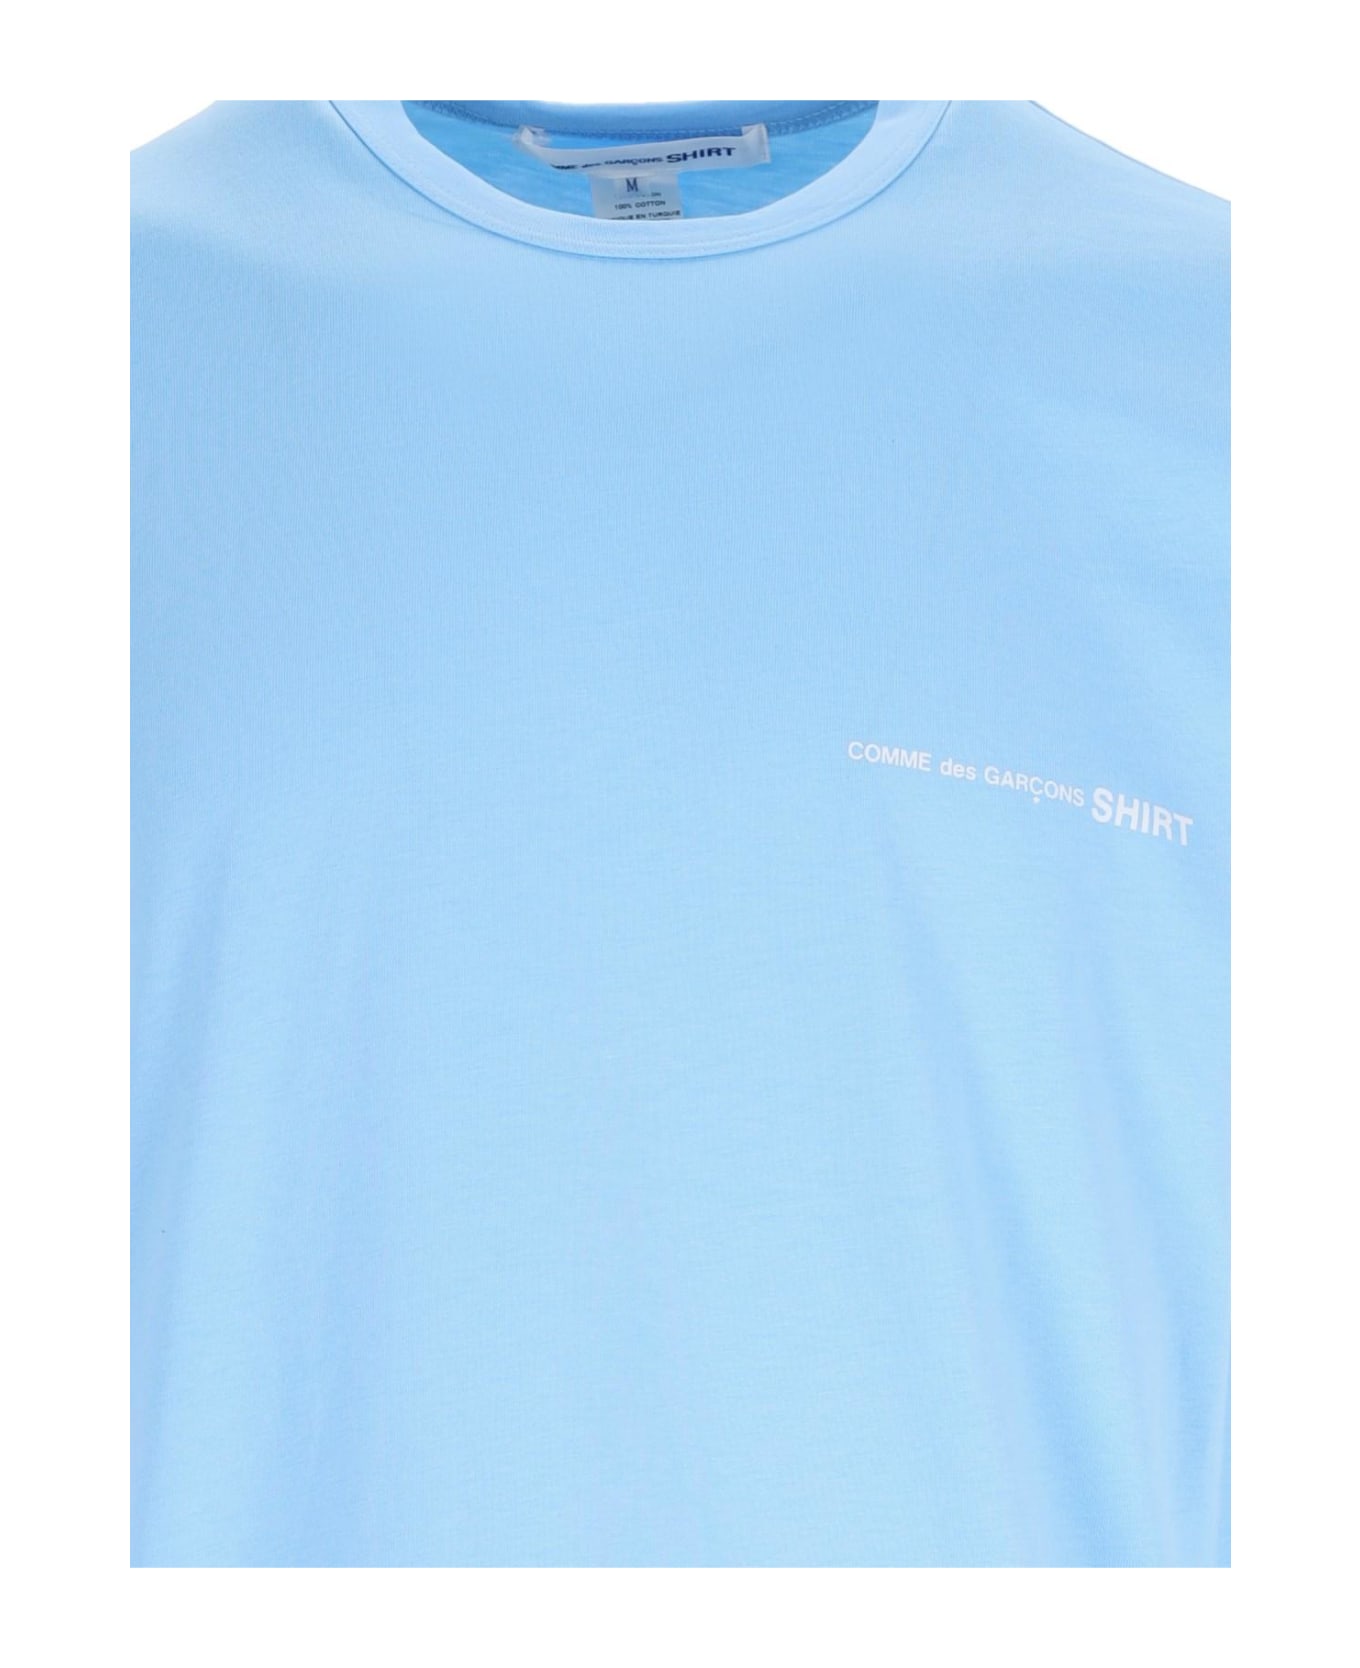 Comme des Garçons Shirt Logo T-shirt - Blue シャツ